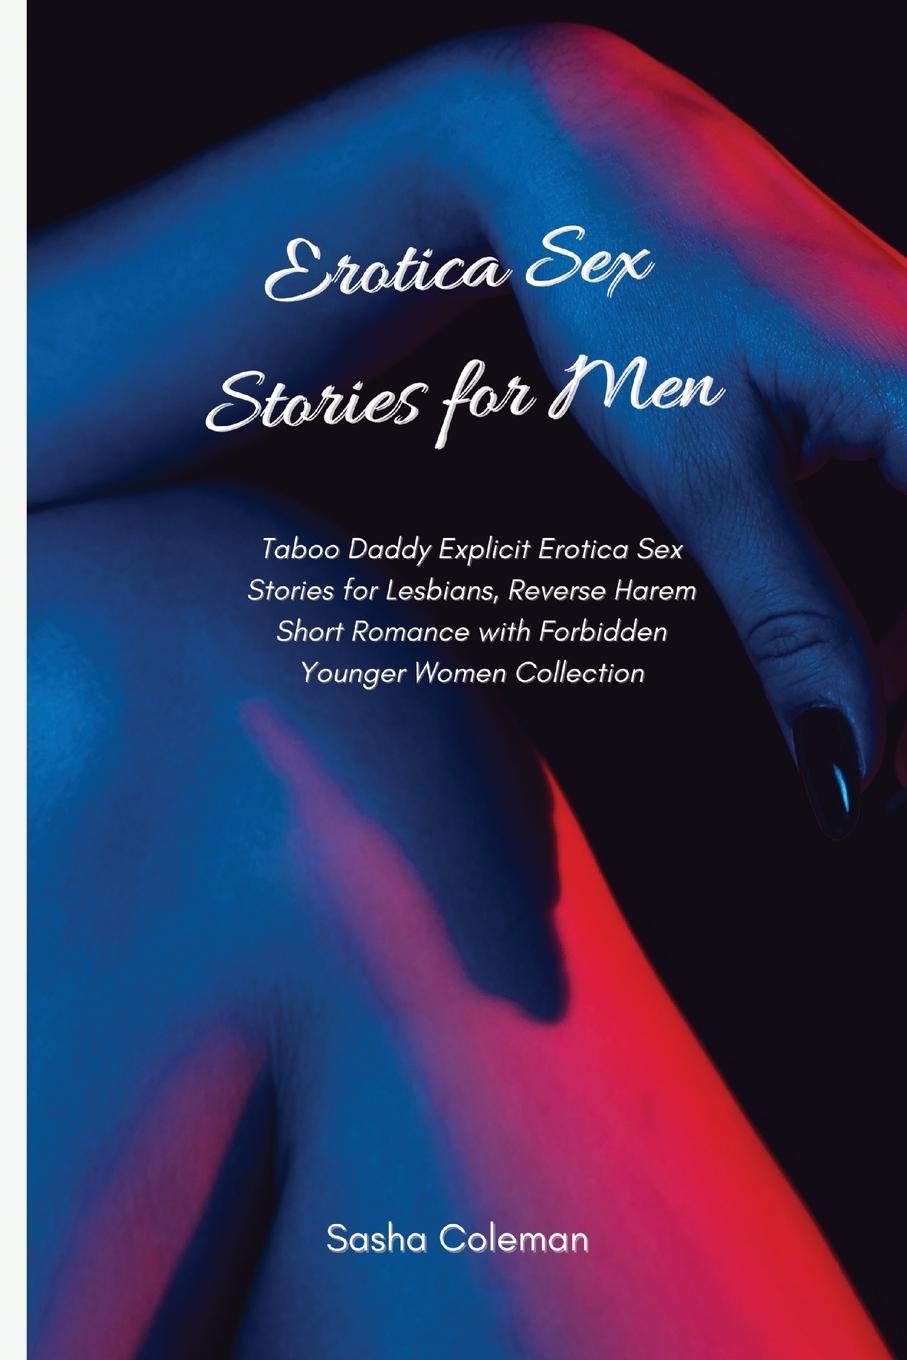 Kniha Erotica Sex Stories for Men 